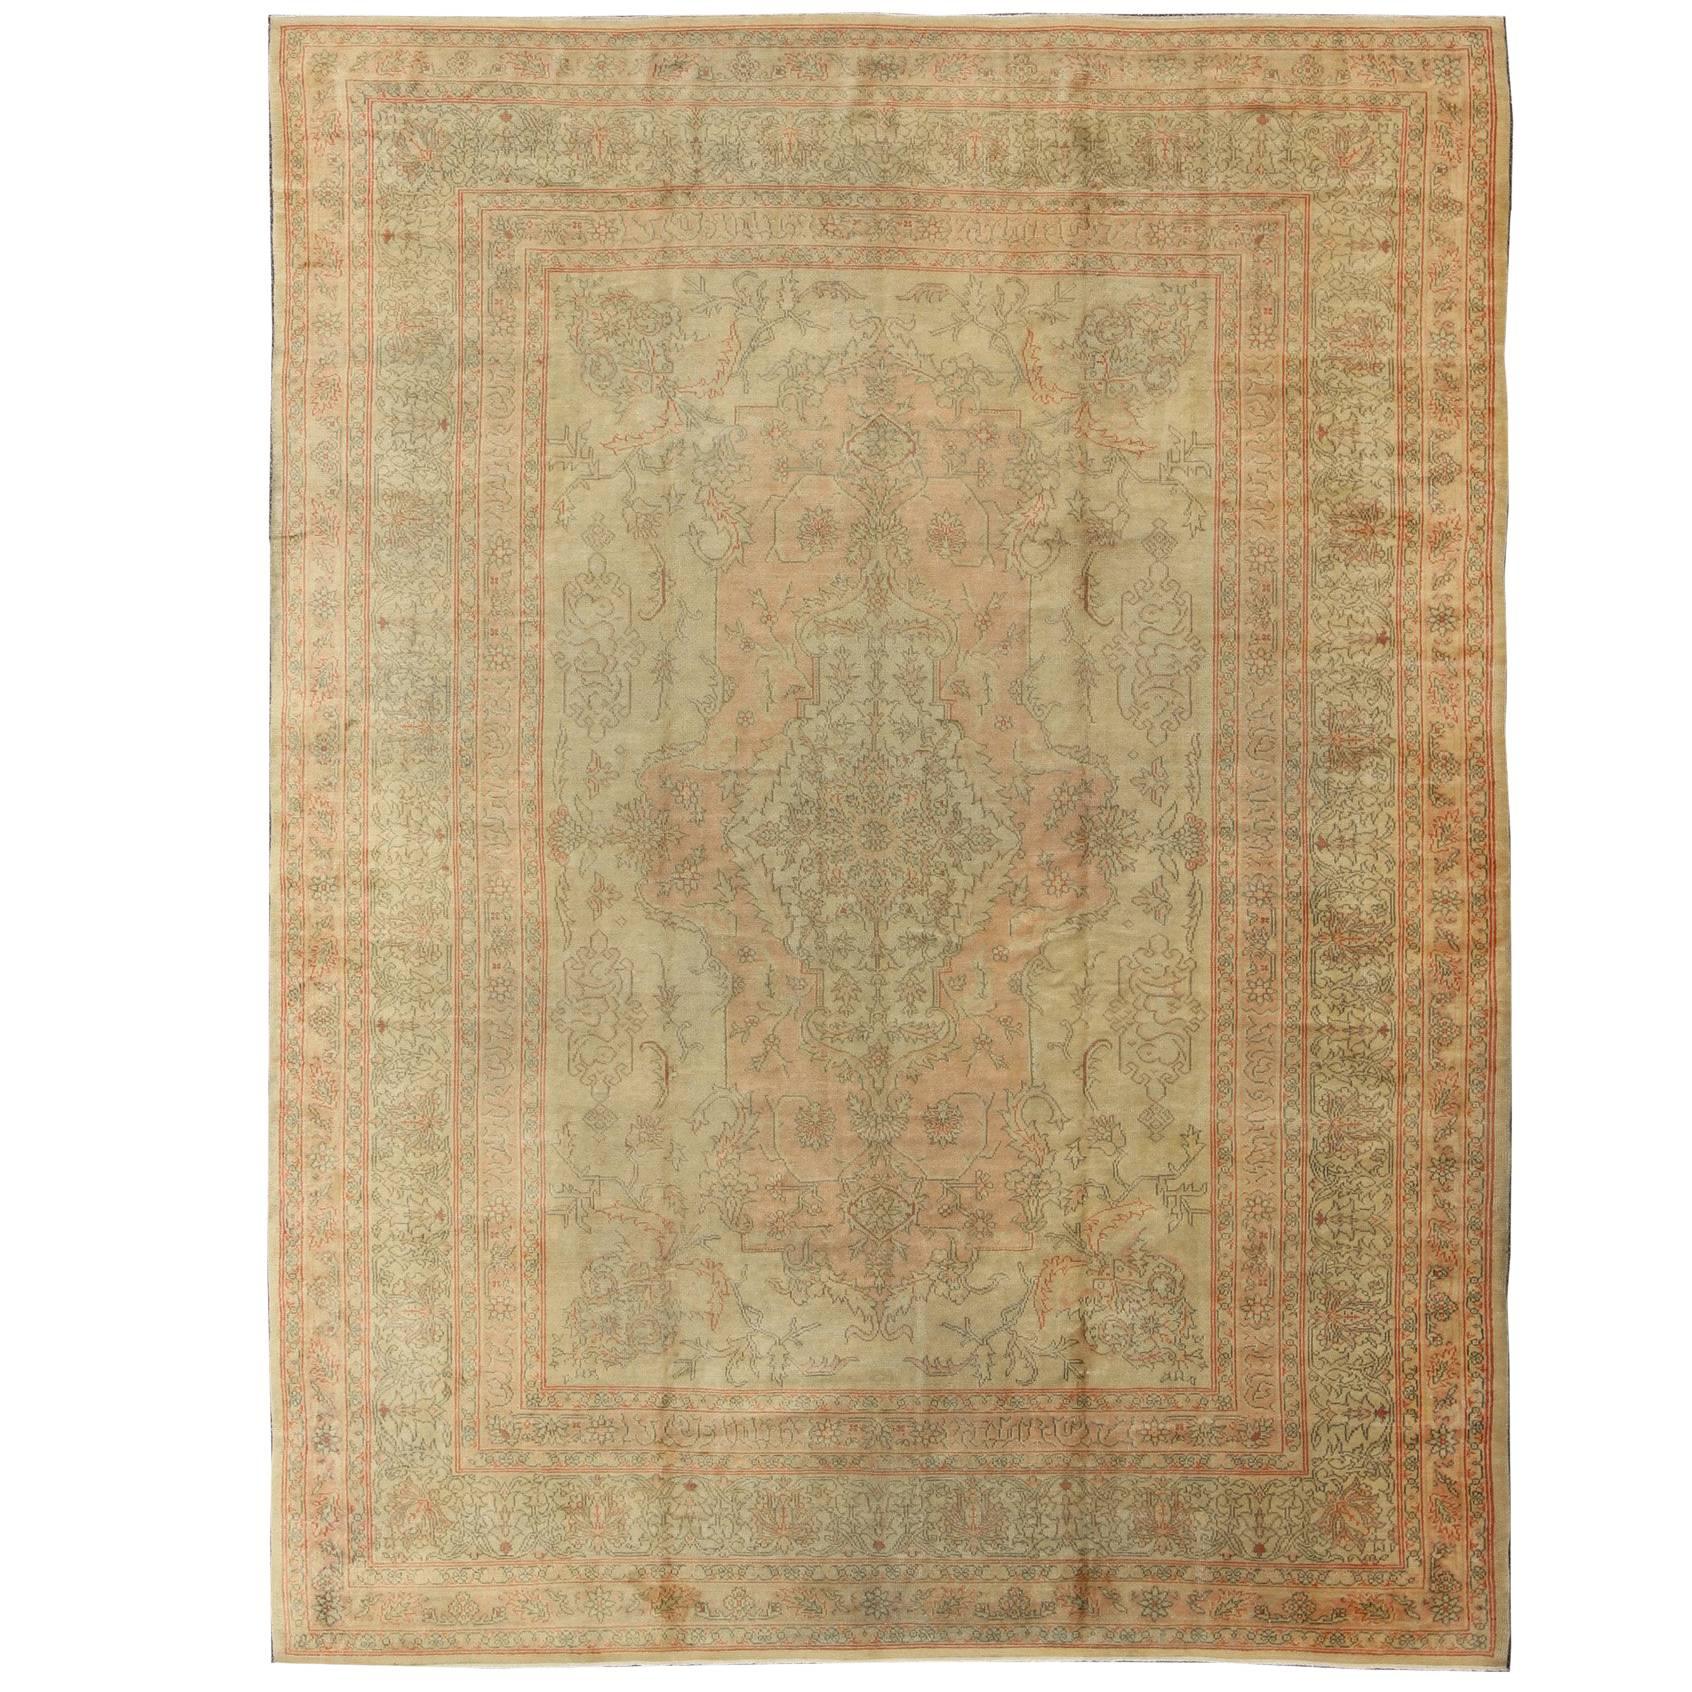  Antique Oushak Medallion Carpet in Light Green & Salmon For Sale